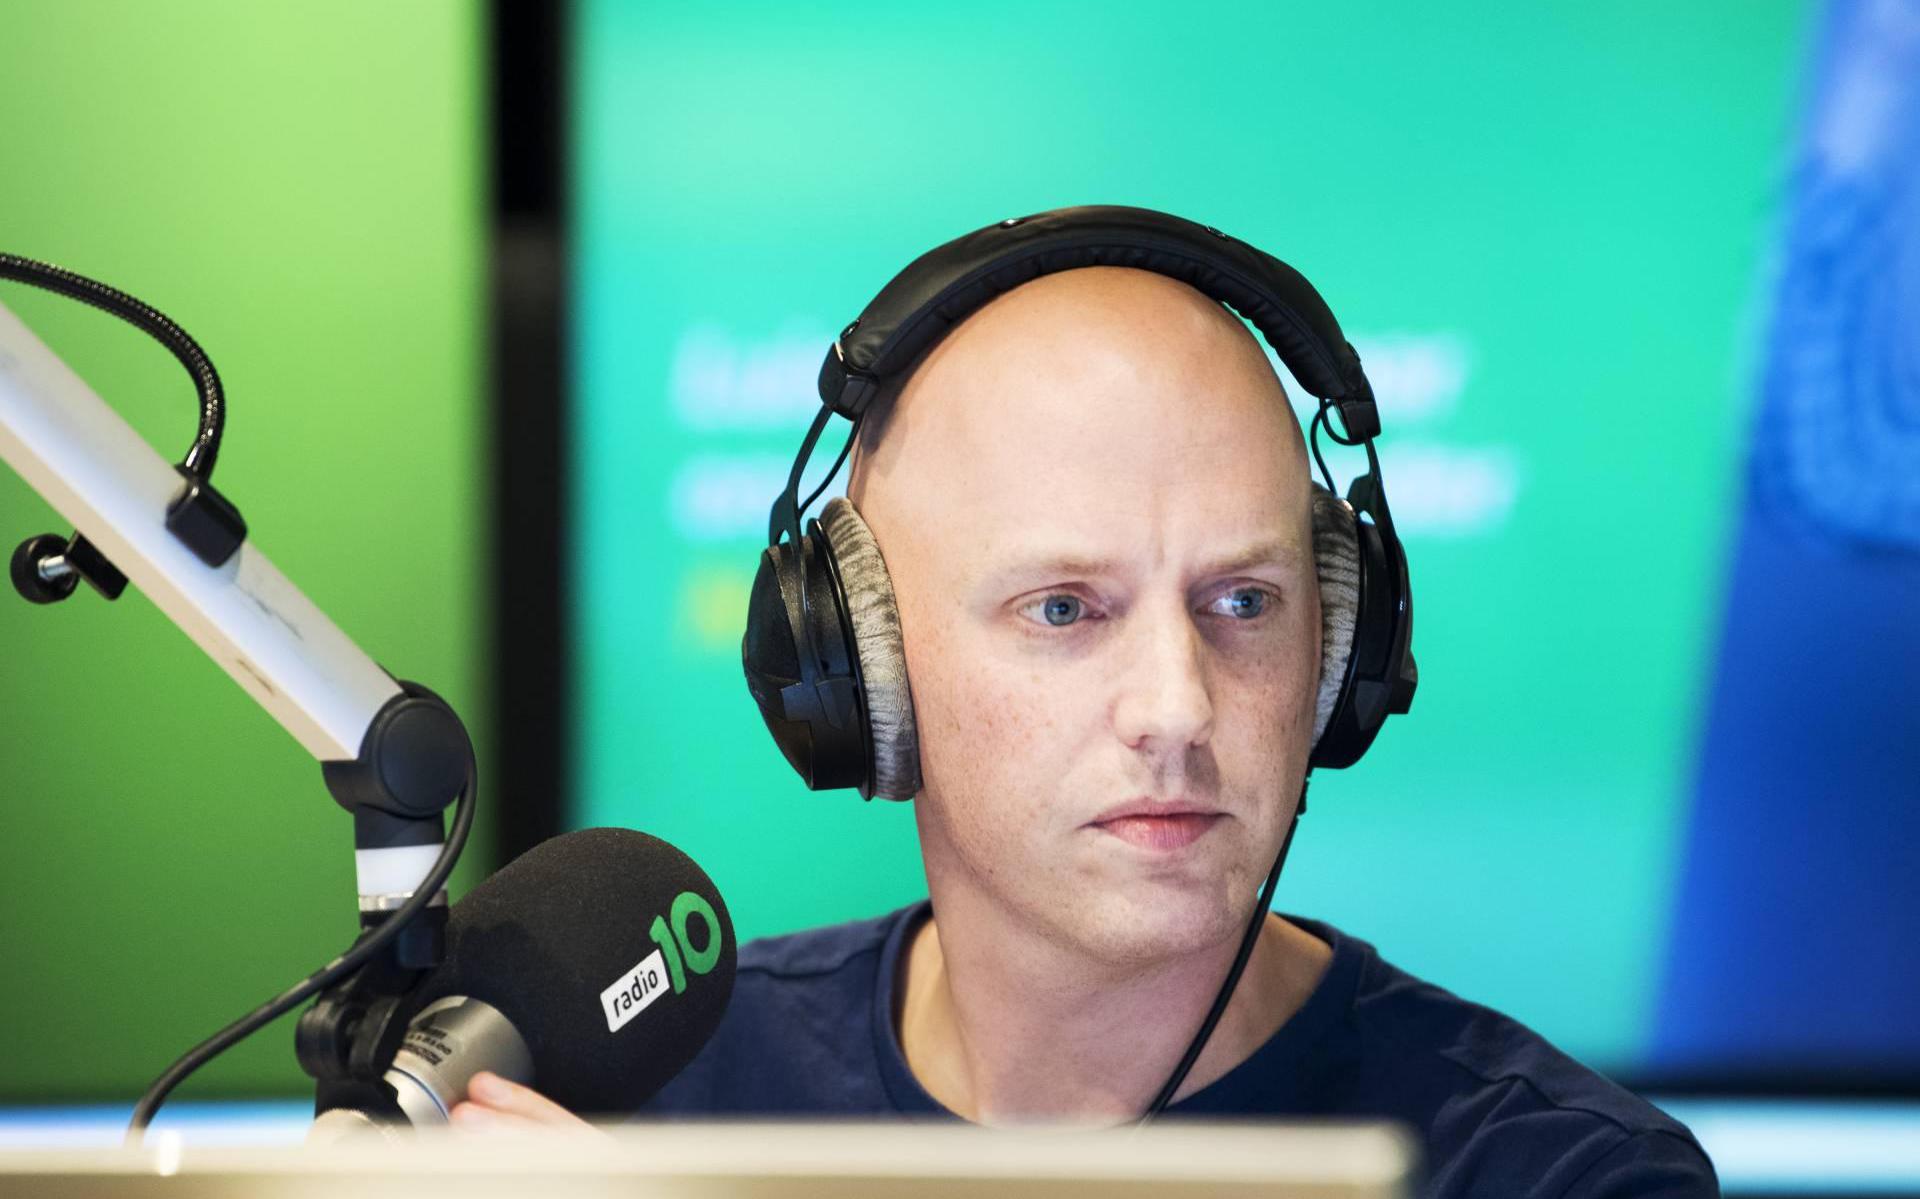 Radio 10-dj Lex Gaarthuis wordt niet vervolgd voor coronalied